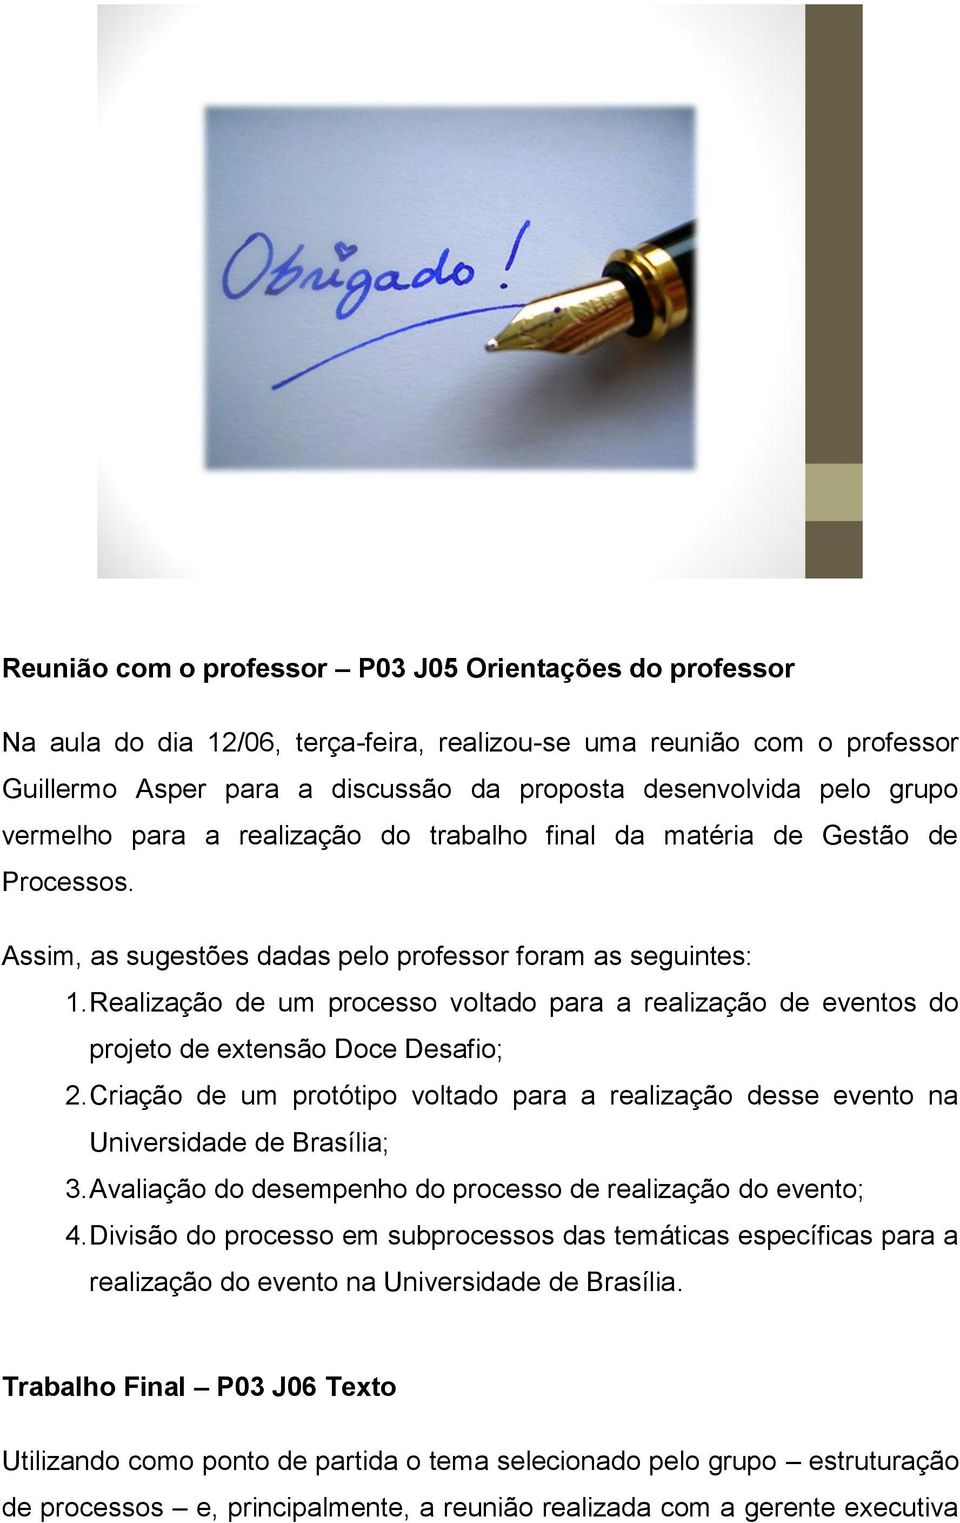 Realização de um processo voltado para a realização de eventos do projeto de extensão Doce Desafio; 2. Criação de um protótipo voltado para a realização desse evento na Universidade de Brasília; 3.